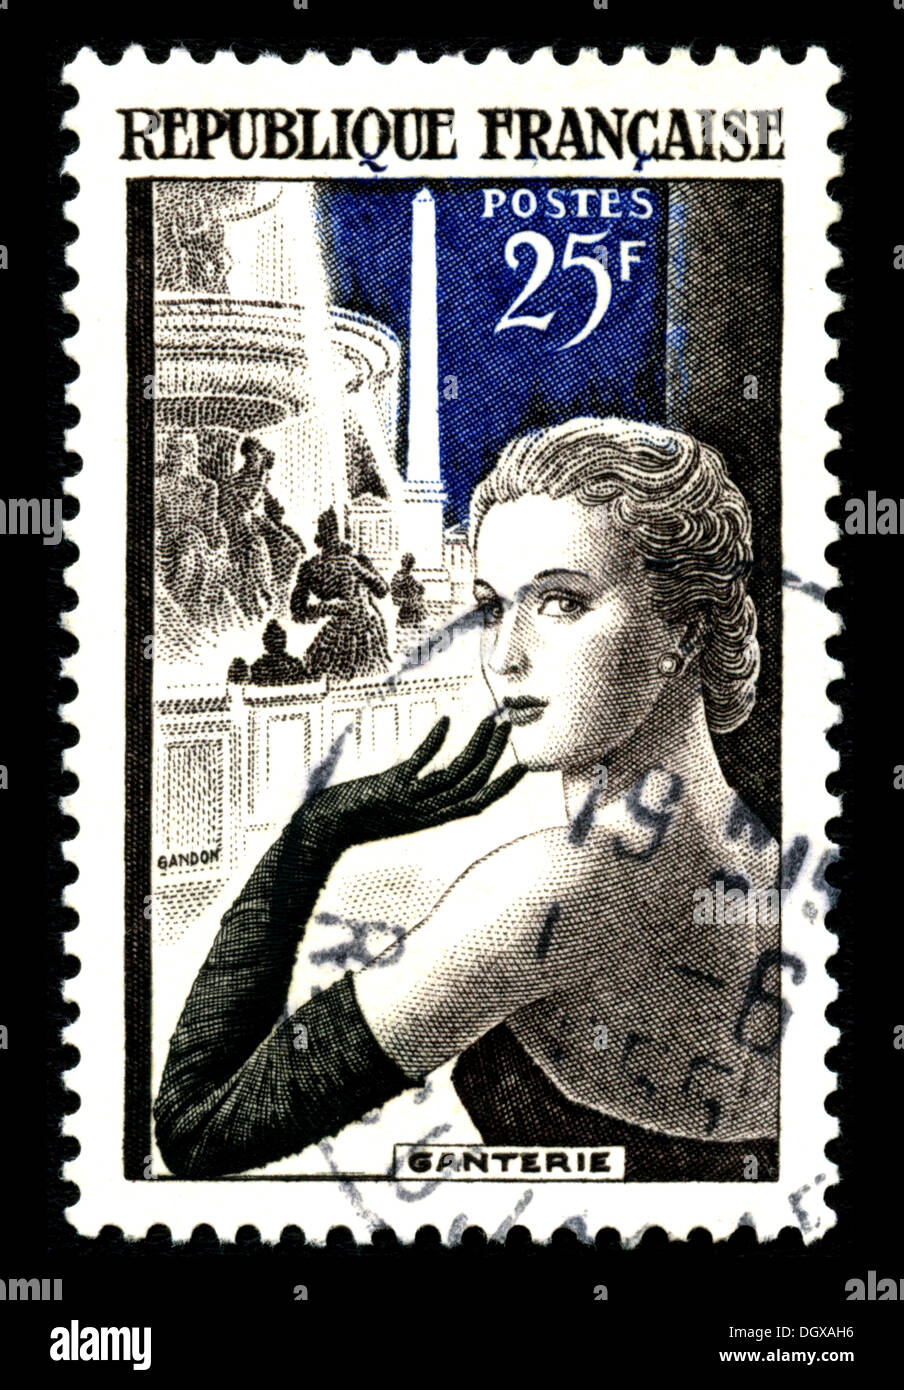 Frankreich-Briefmarke Stockfoto